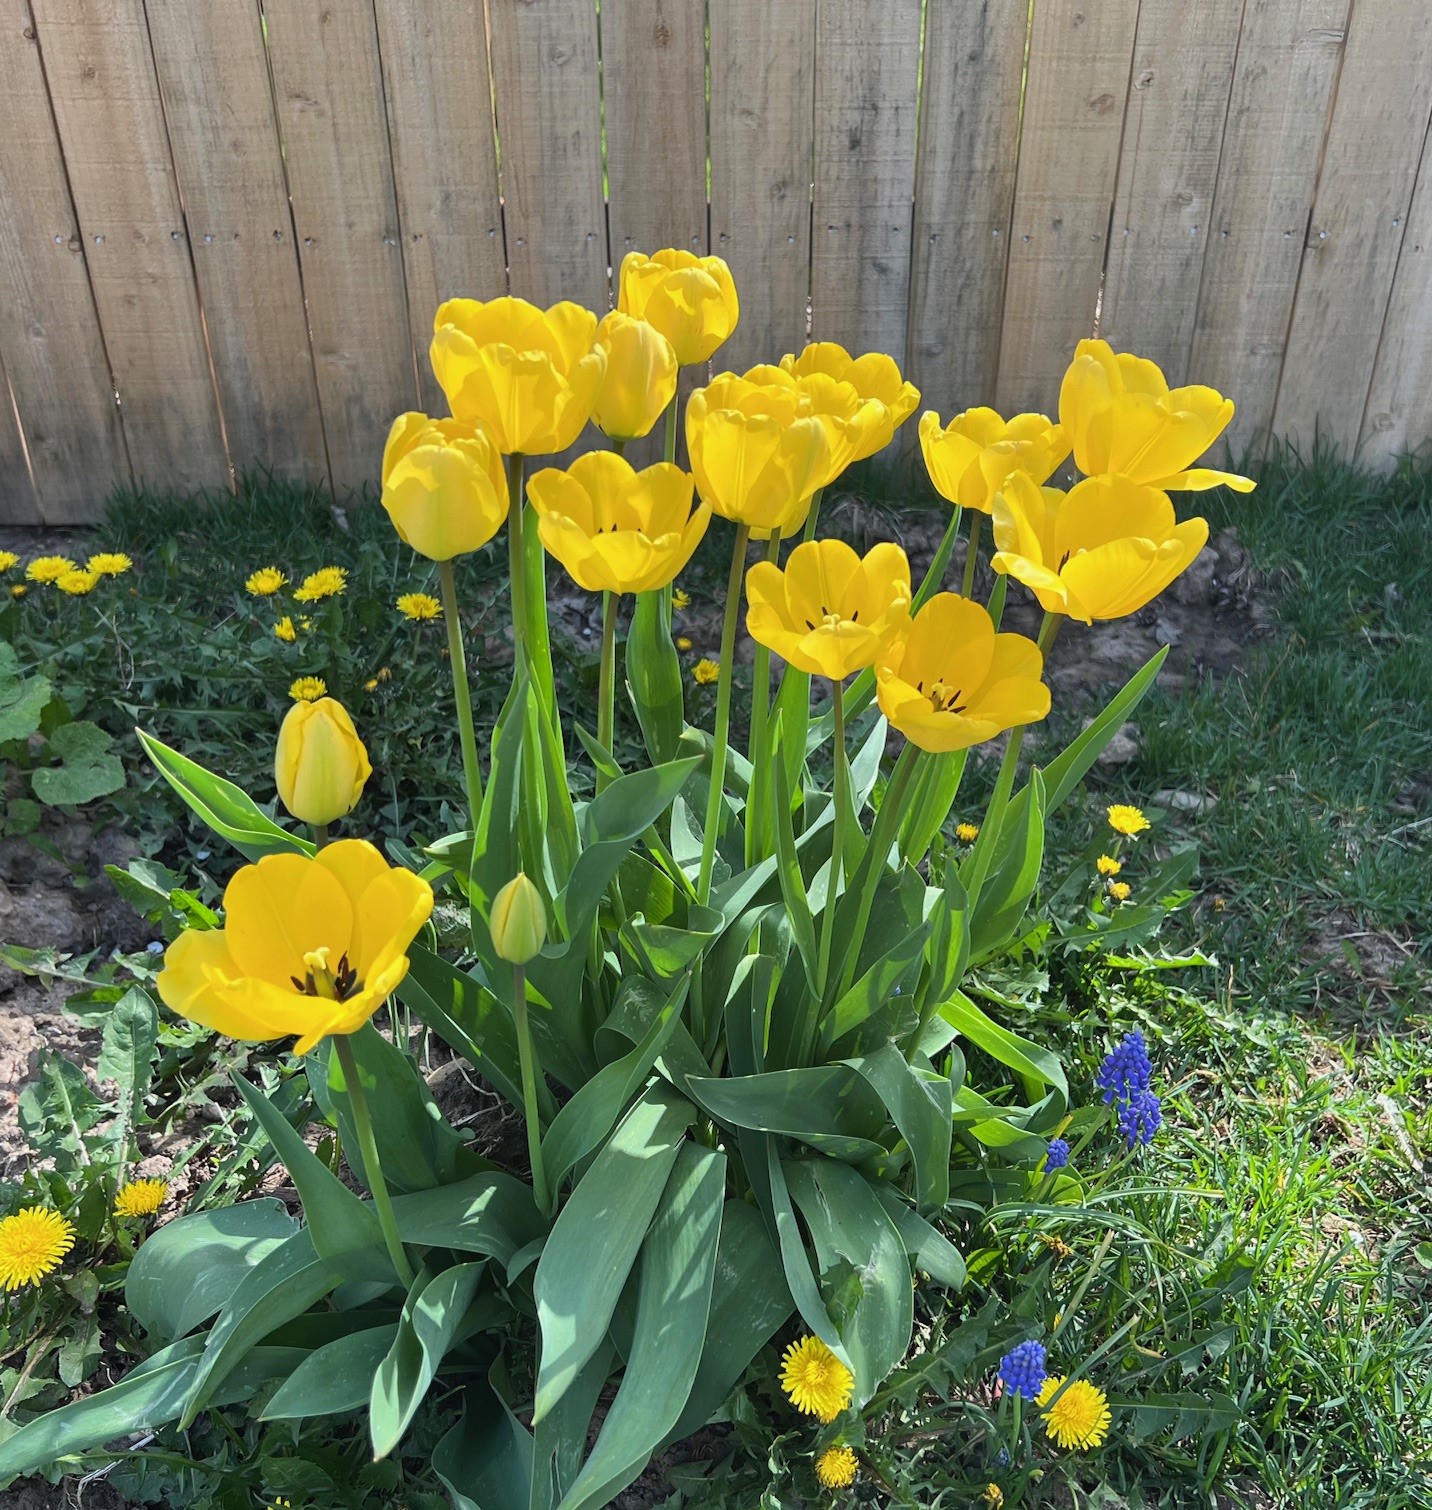 Yellow tulips, muscari, and dandelions